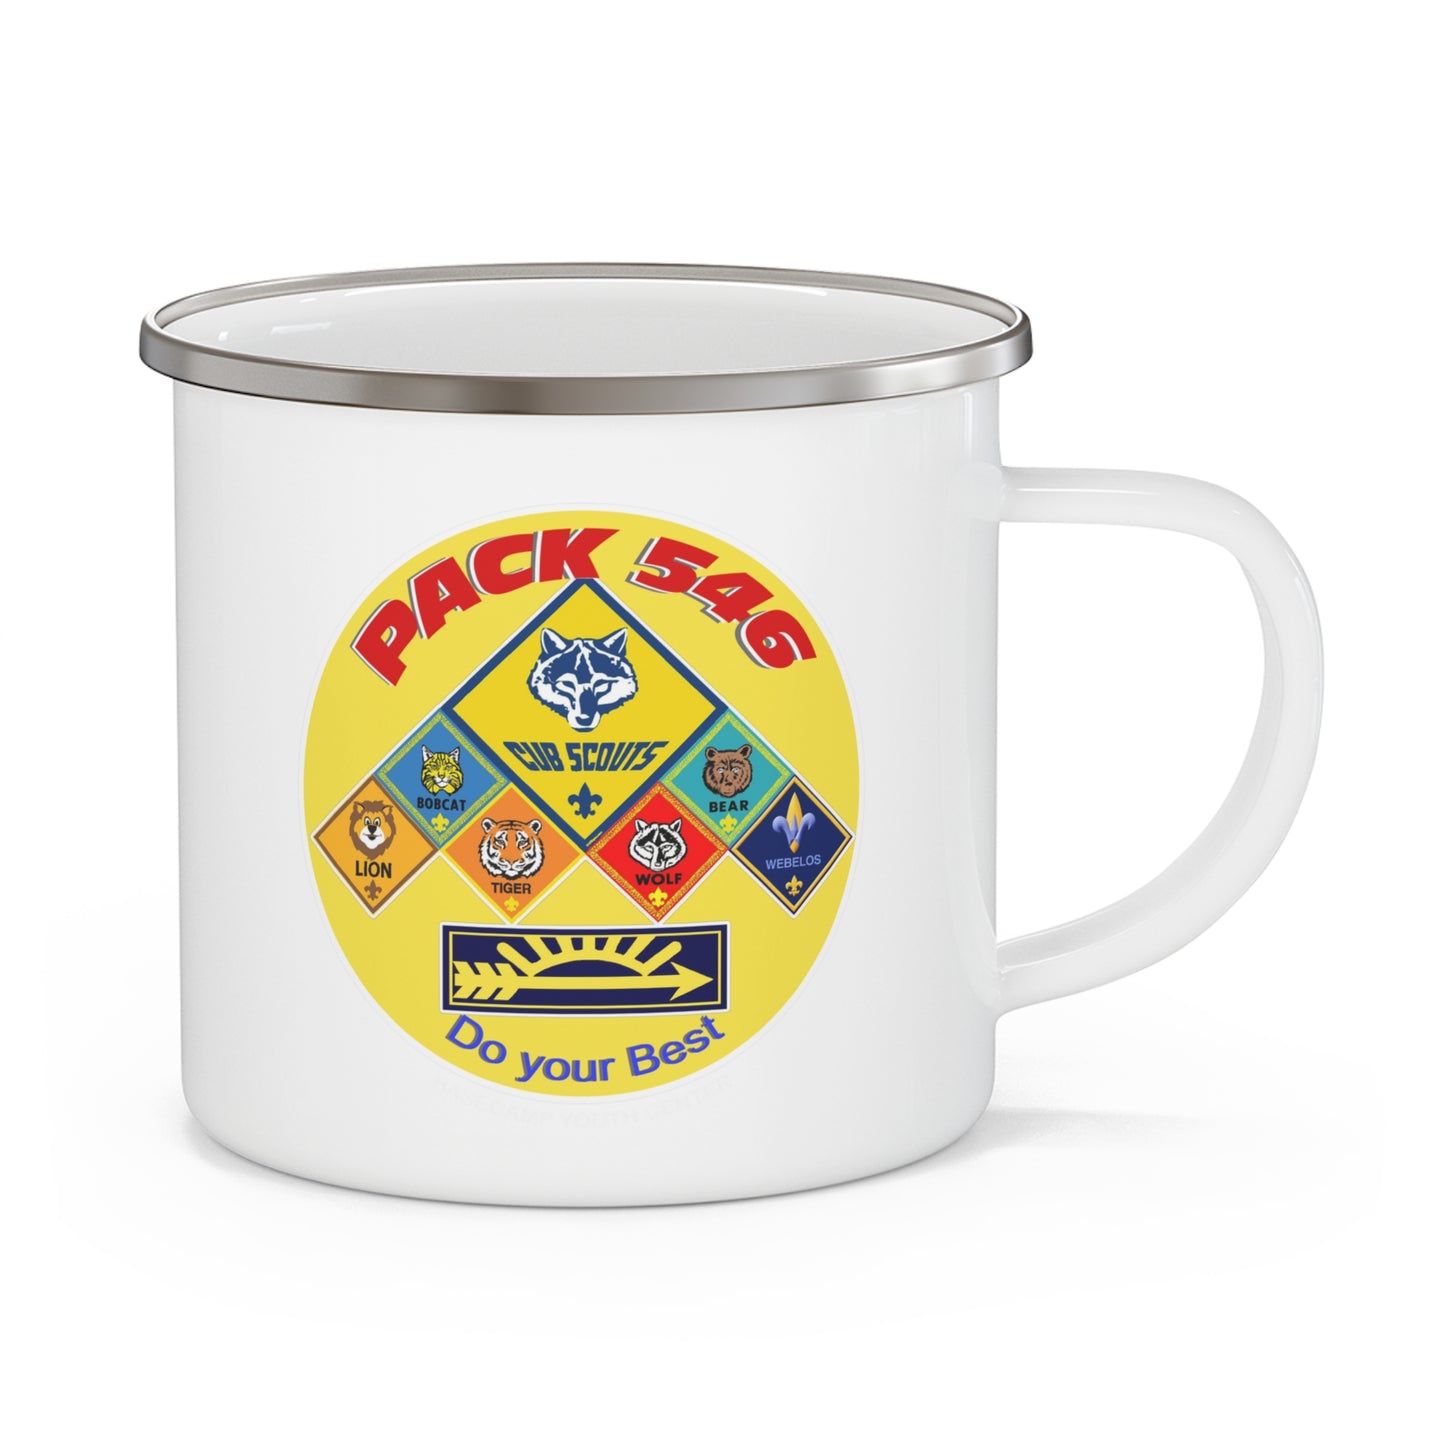 Pack 546 - Enamel Camping Mug